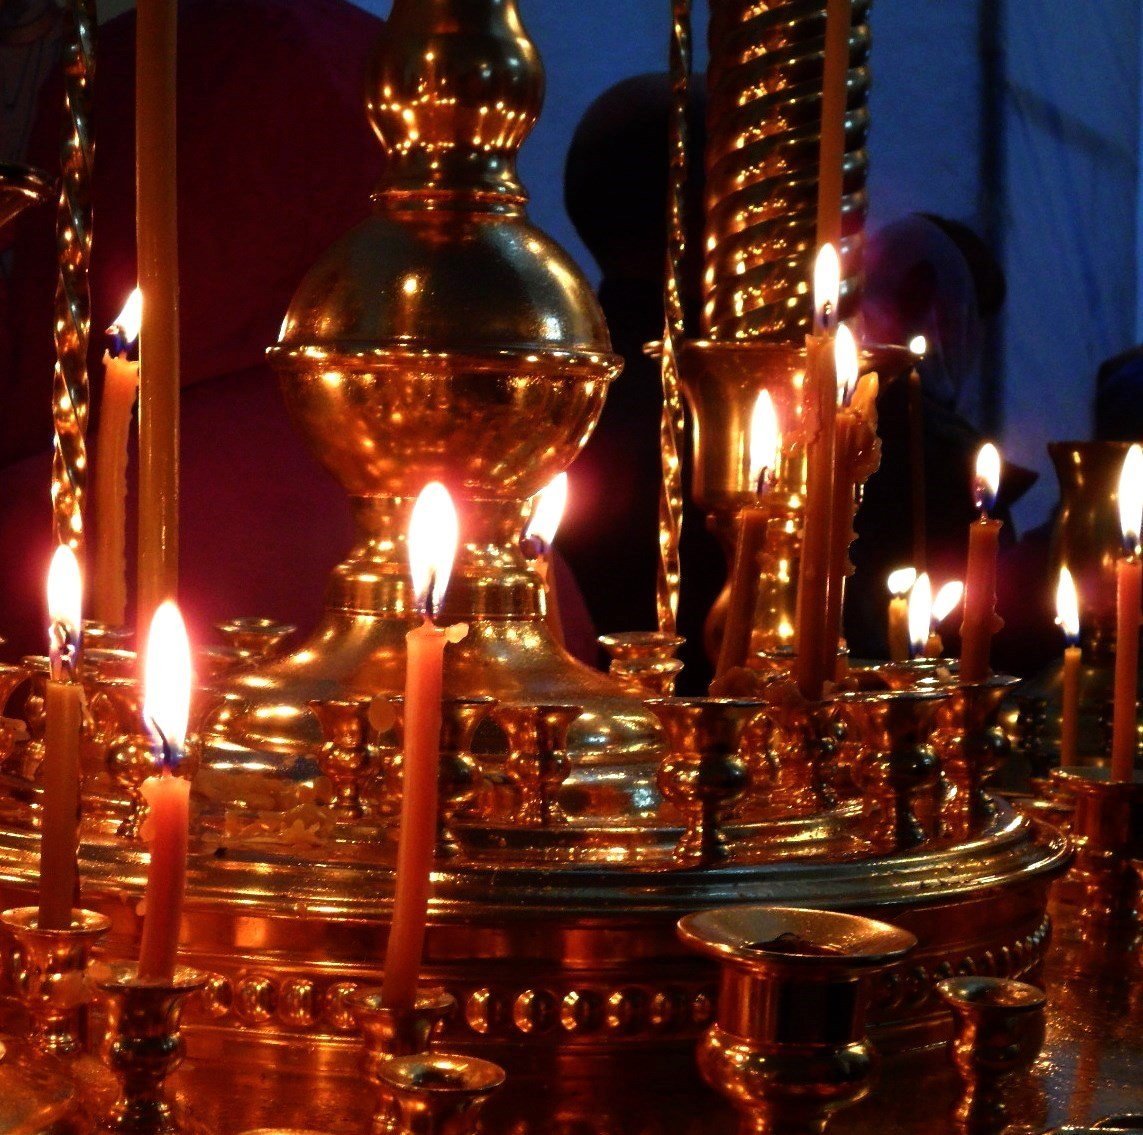 В церкви горят свечи. Свечи в храме. Горящие свечи в храме. Свечи в православном храме. Пасхальные свечи.